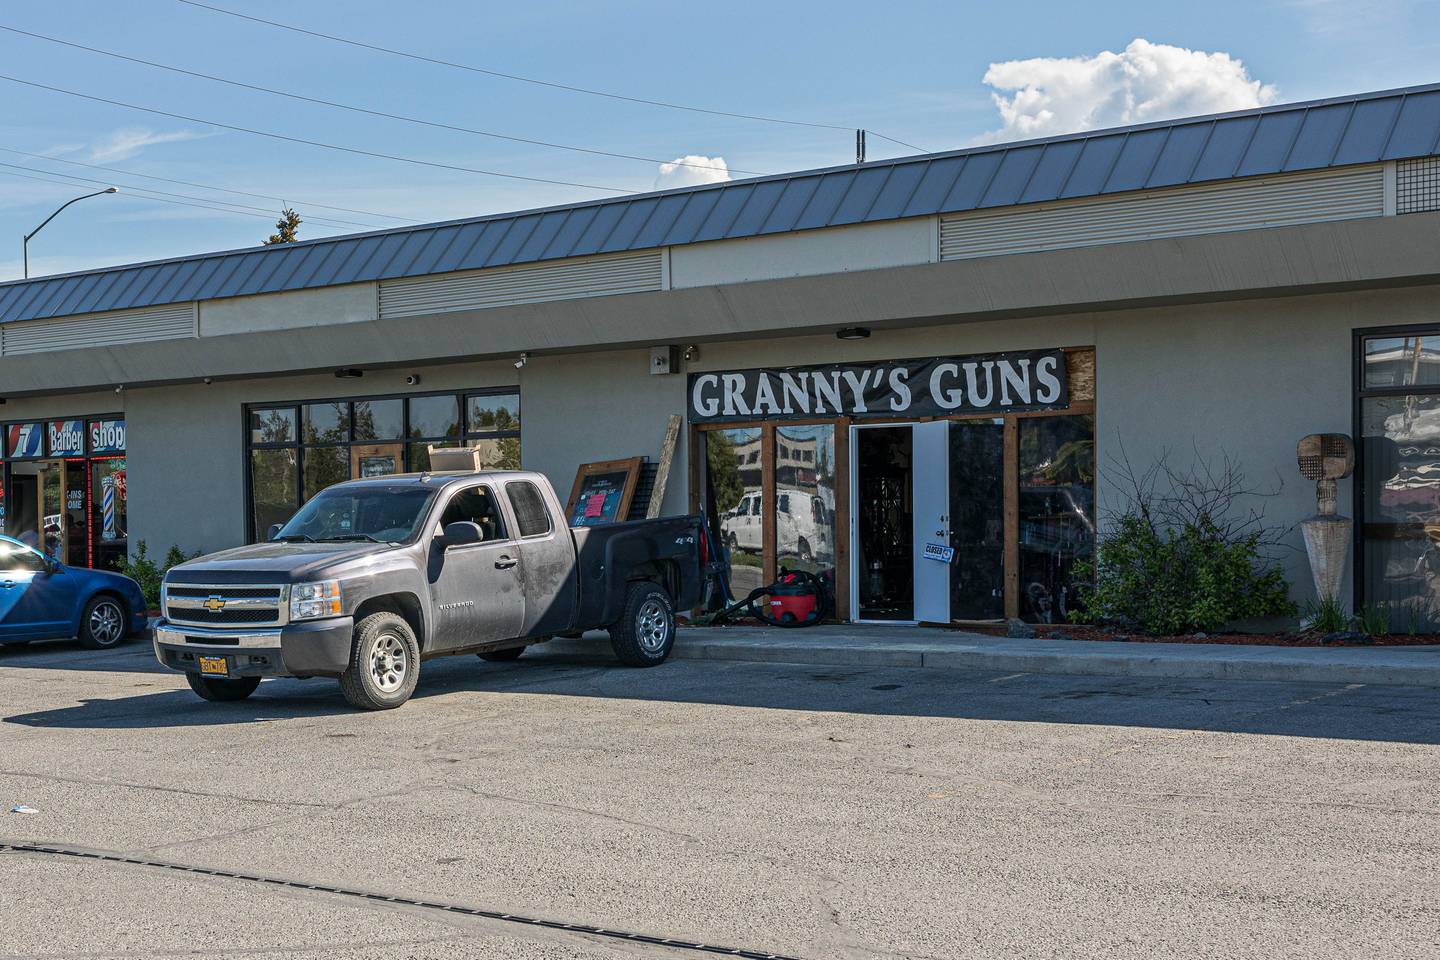 granny's guns, grannys guns, gun shop, guns, robbery